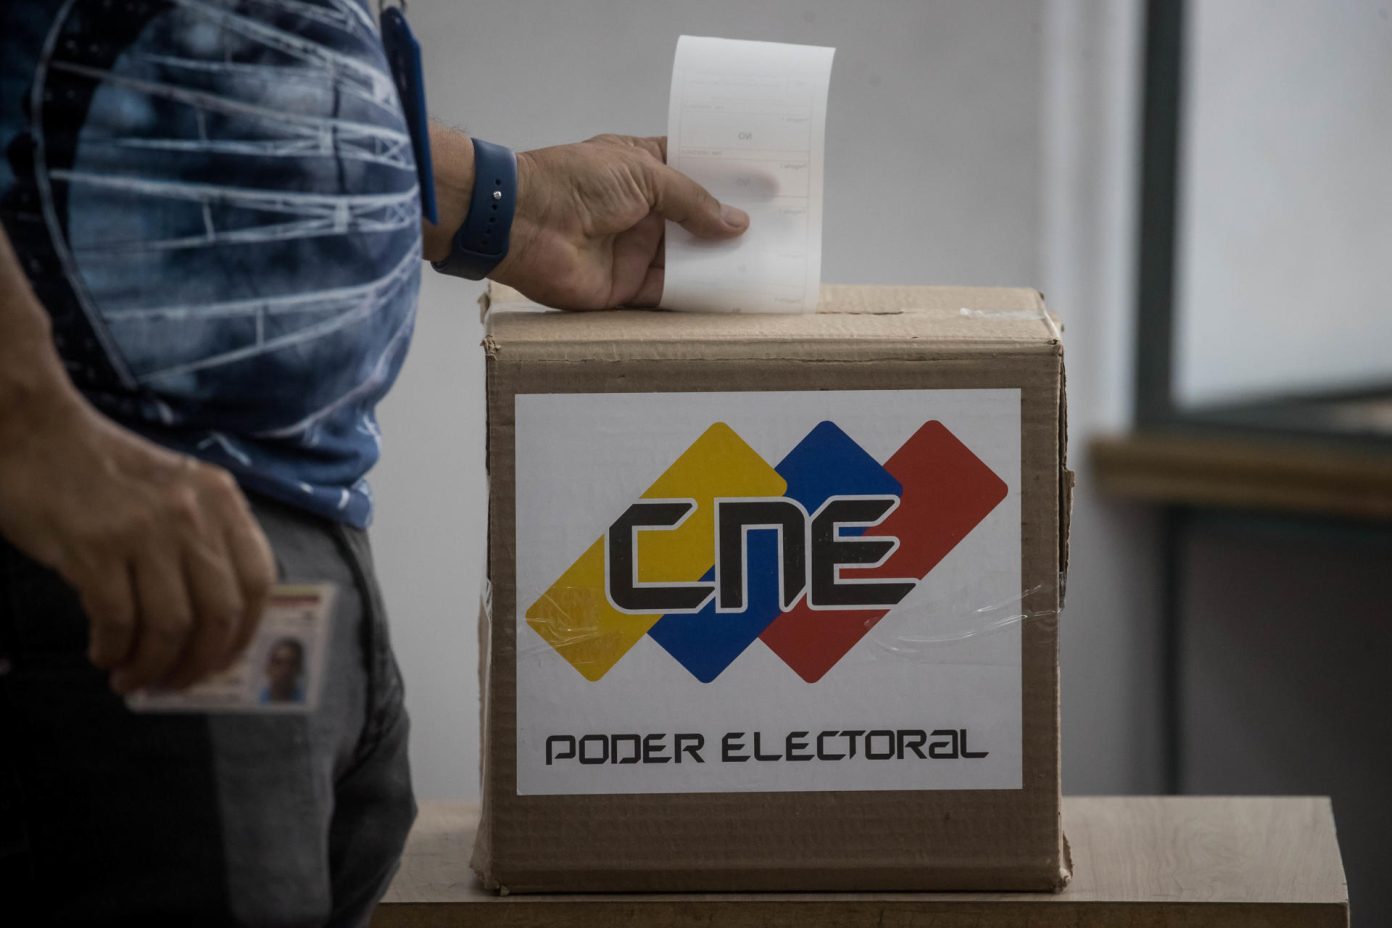 Imagen de la noticia: Observatorio Electoral Venezolano: Sustitución de candidaturas puede realizarse hasta 10 días antes de las elecciones